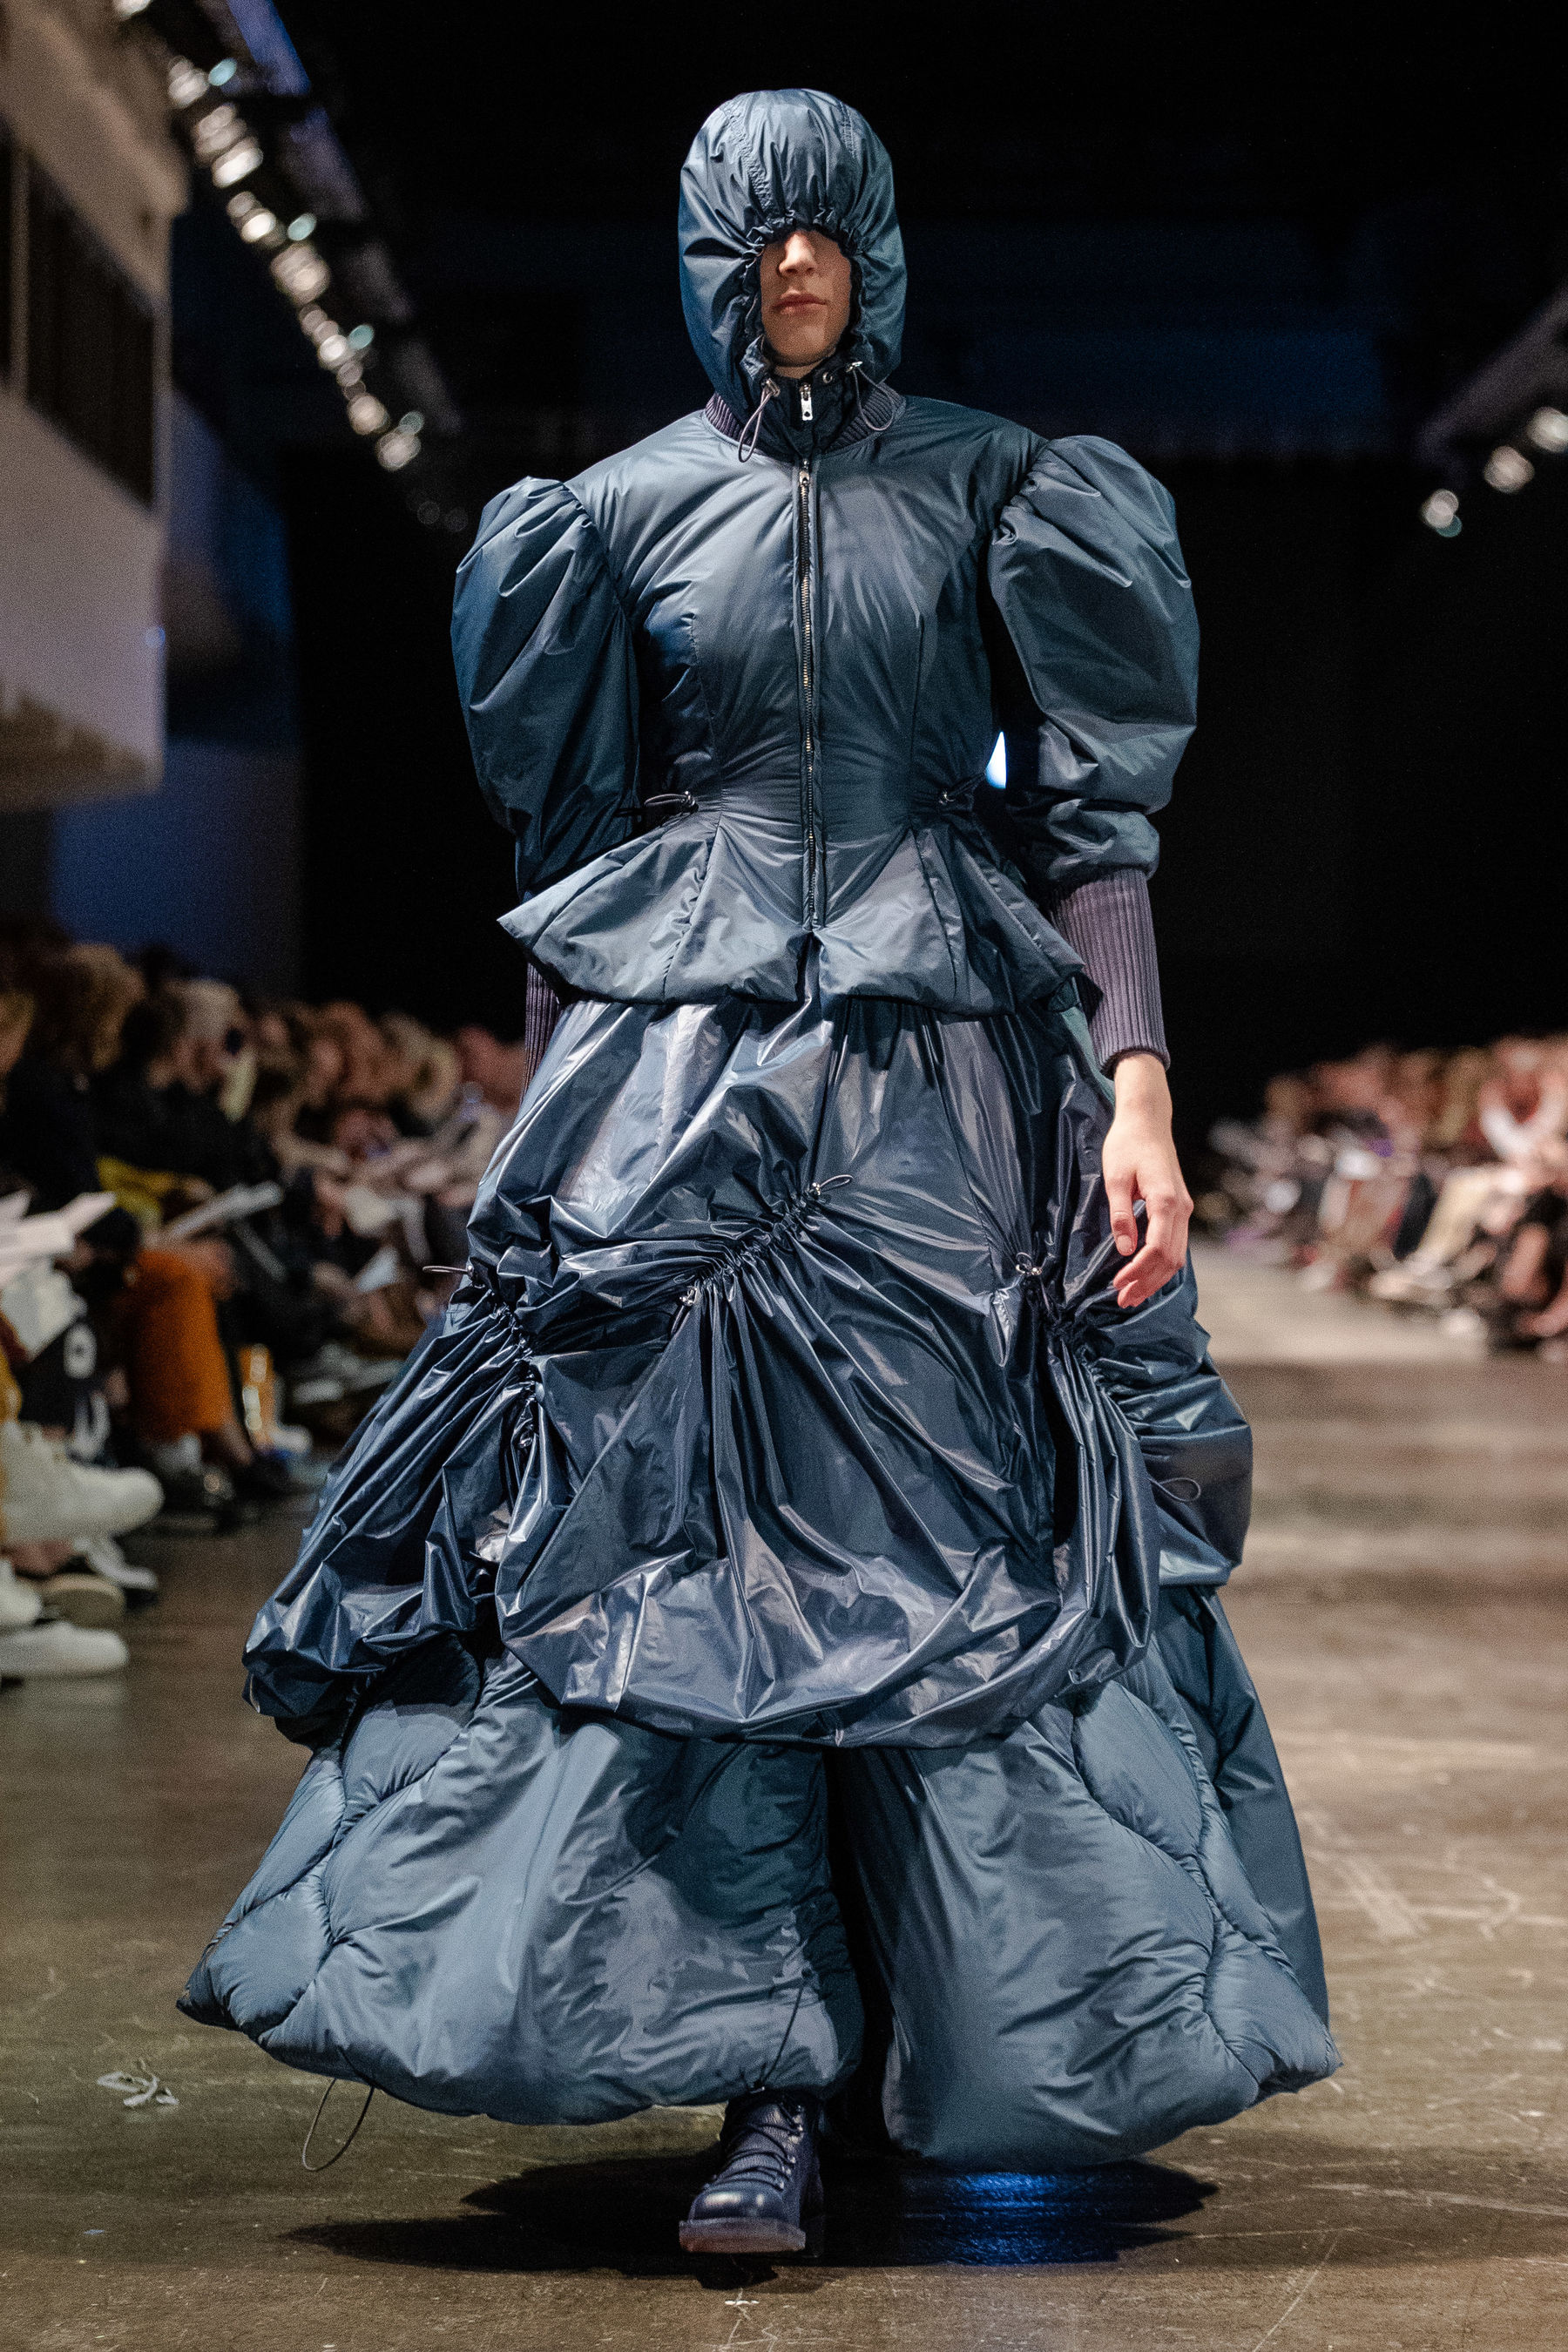 Model walking down catwalk in blue fluffy dress